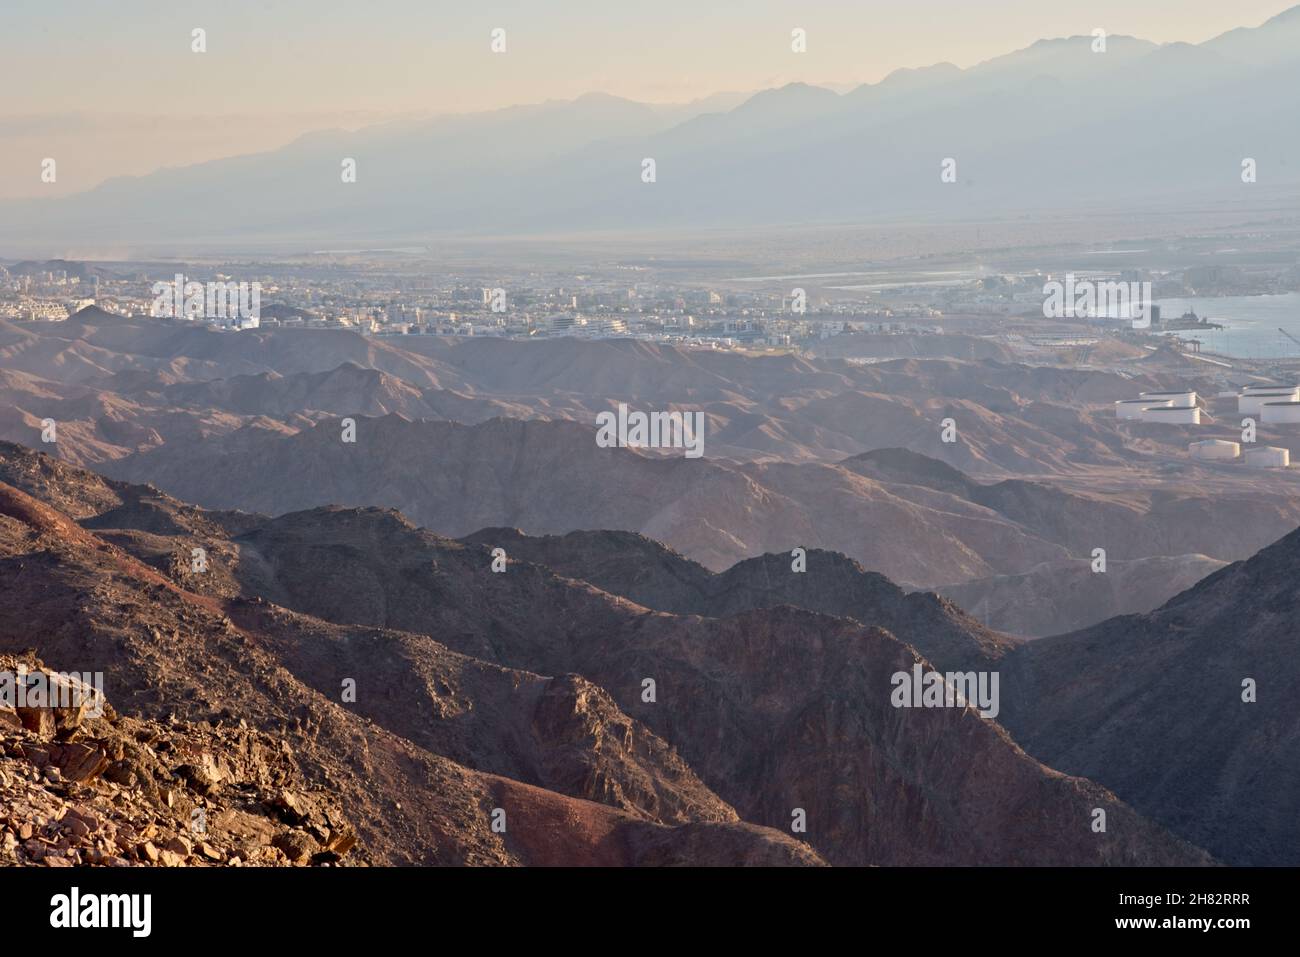 Shlomo Salomon montagne.Vue sur les montagnes Eilat.Sur le fond des  montagnes d'Aqaba, en Jordanie.Les montagnes, la ville et le port.Mer  Rouge.Eilat Israël.Photo de haute qualité Photo Stock - Alamy